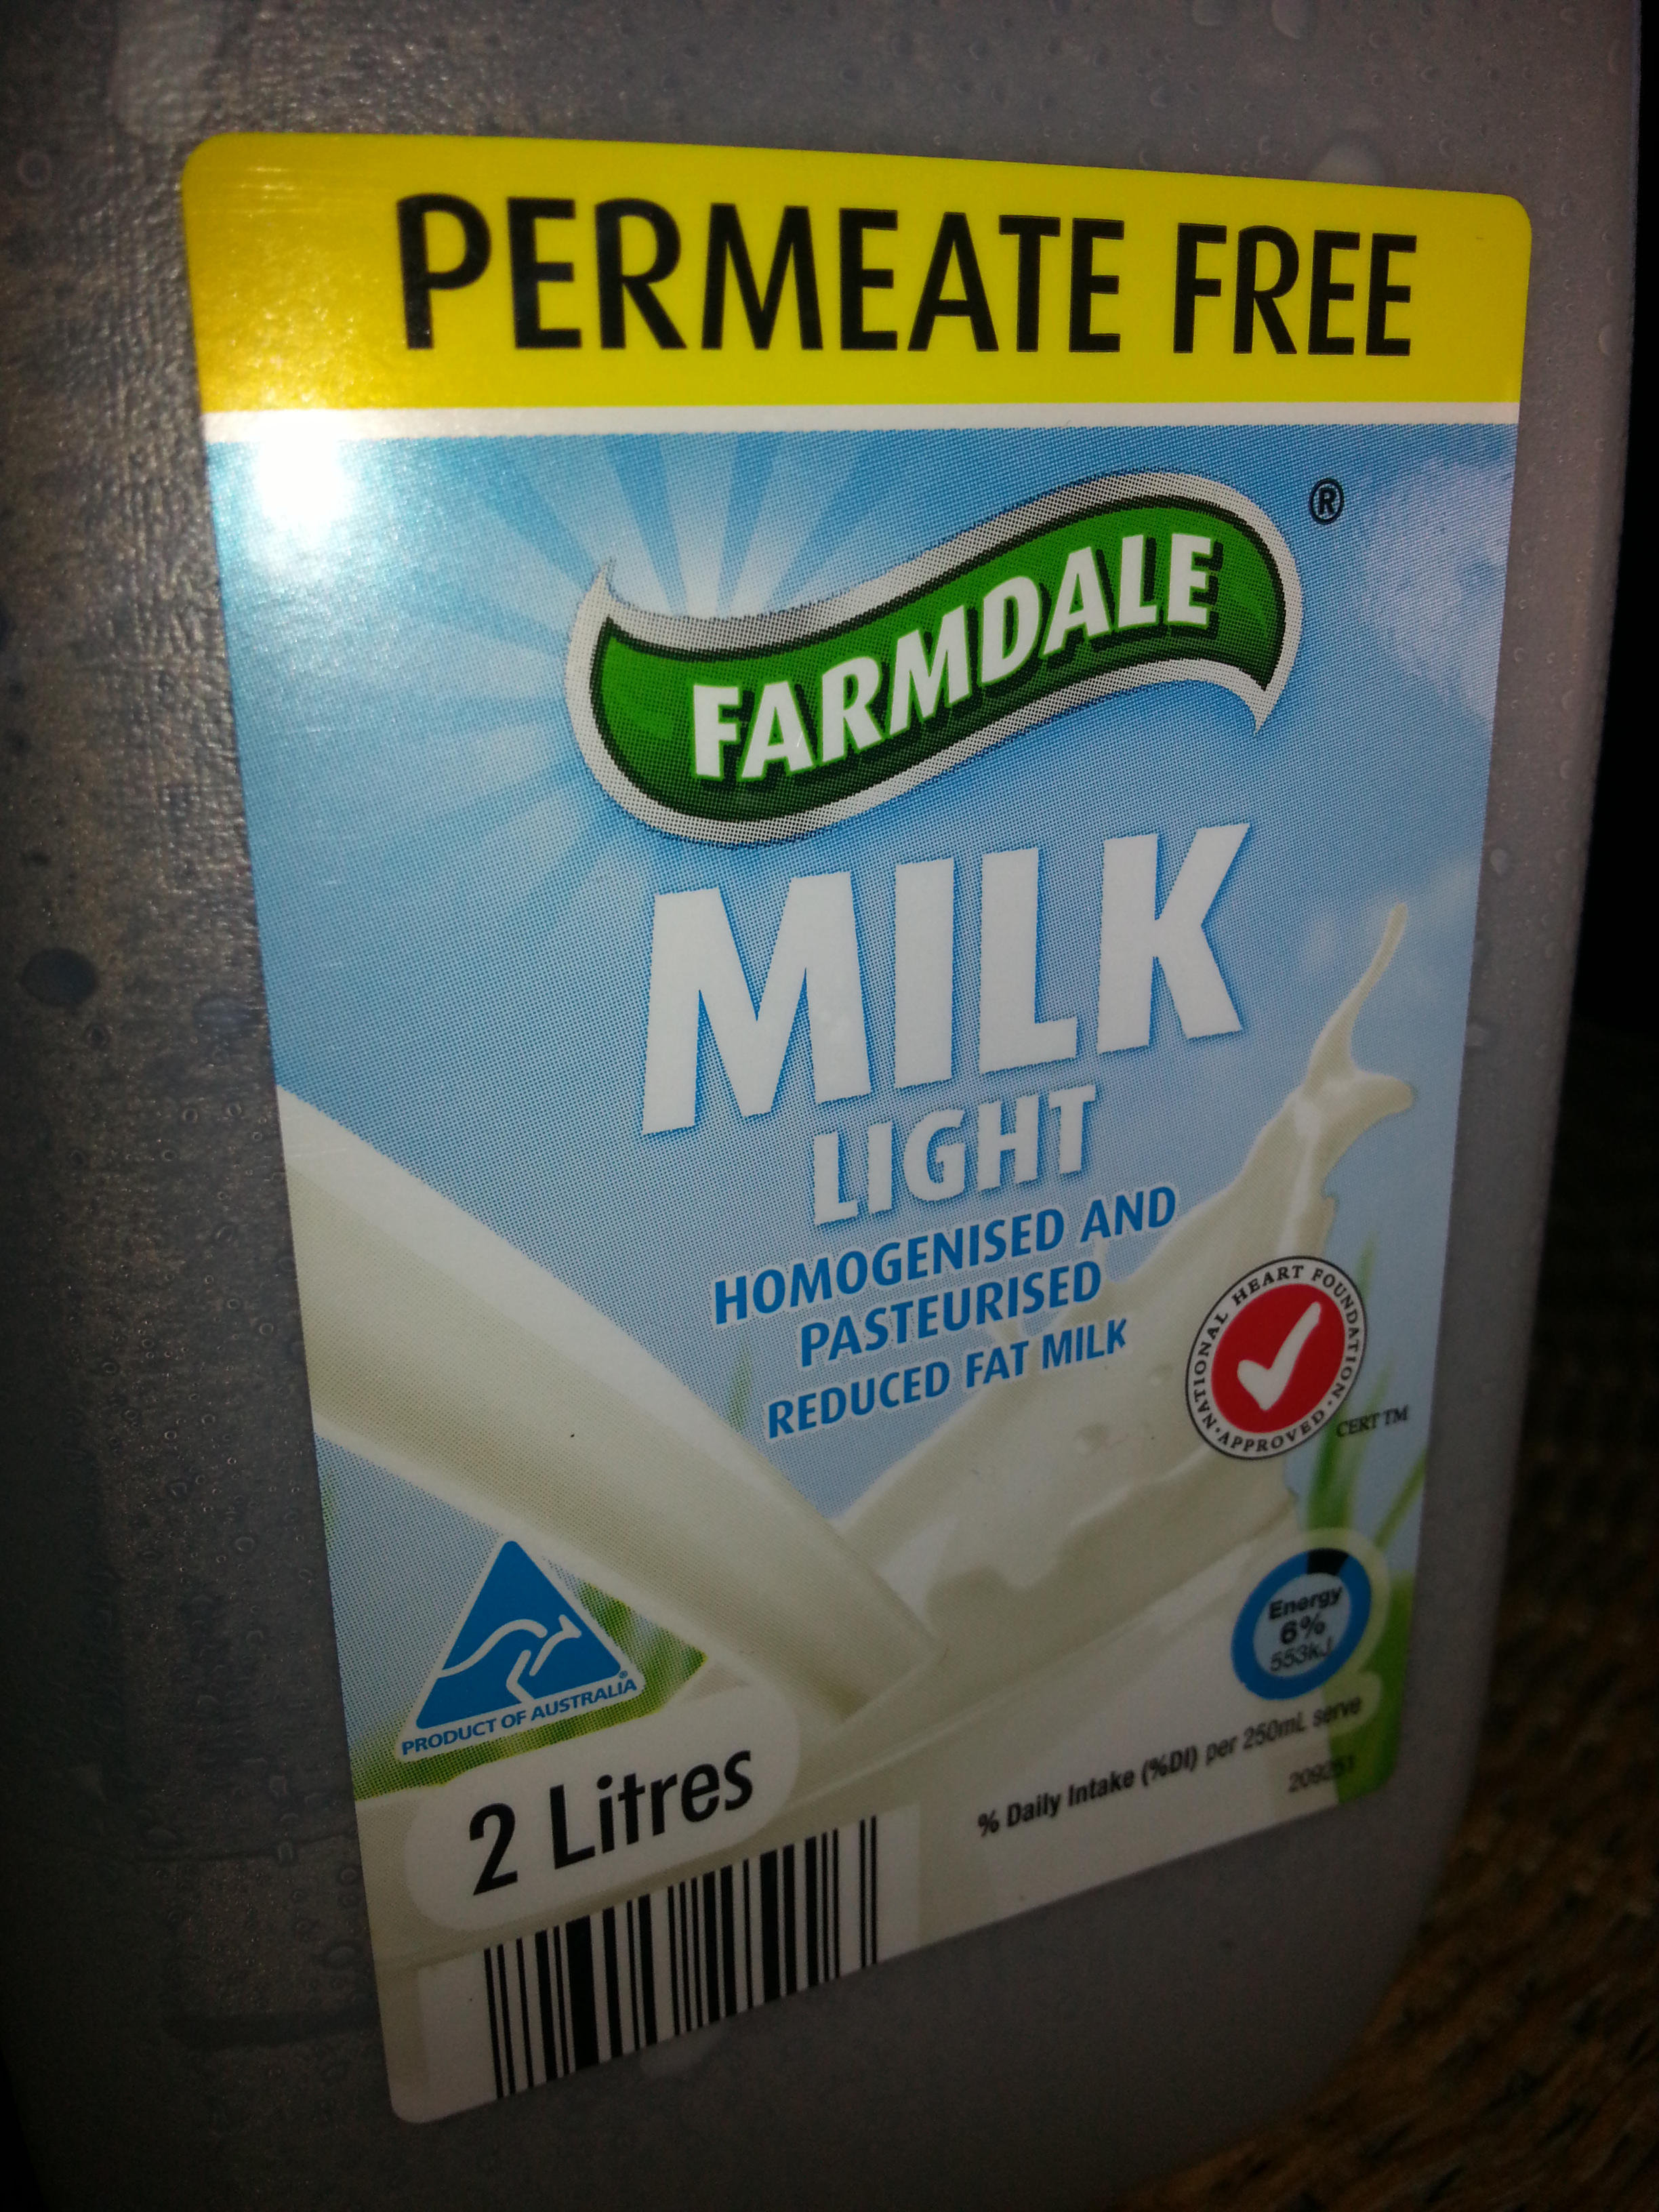 Permeate Free milk